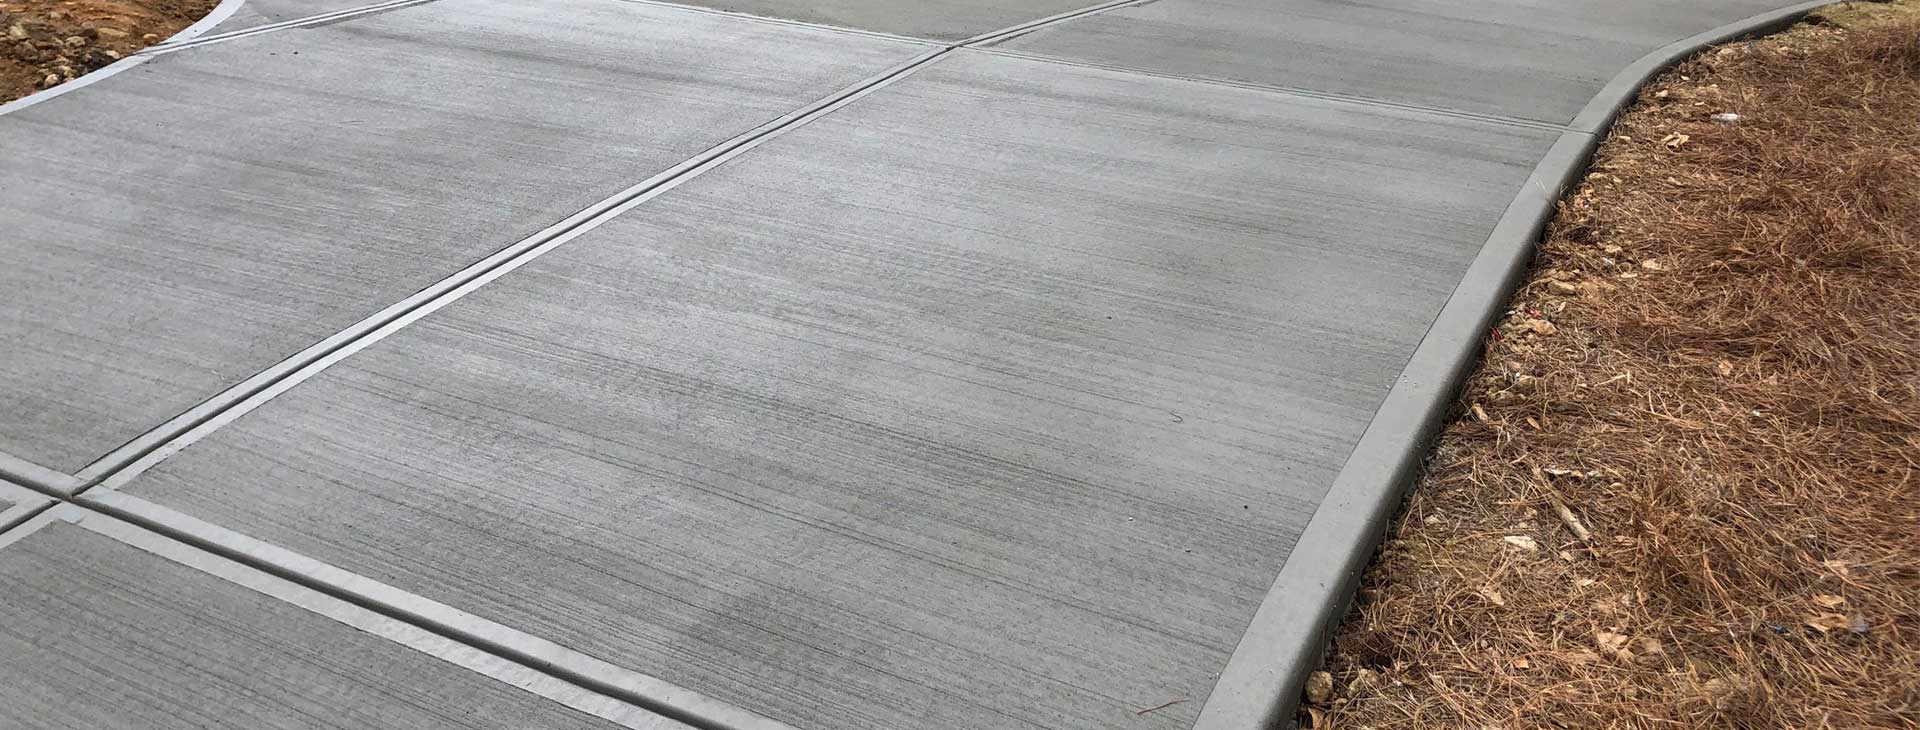 Professional Concrete & Paver<br /> Driveway Specialists